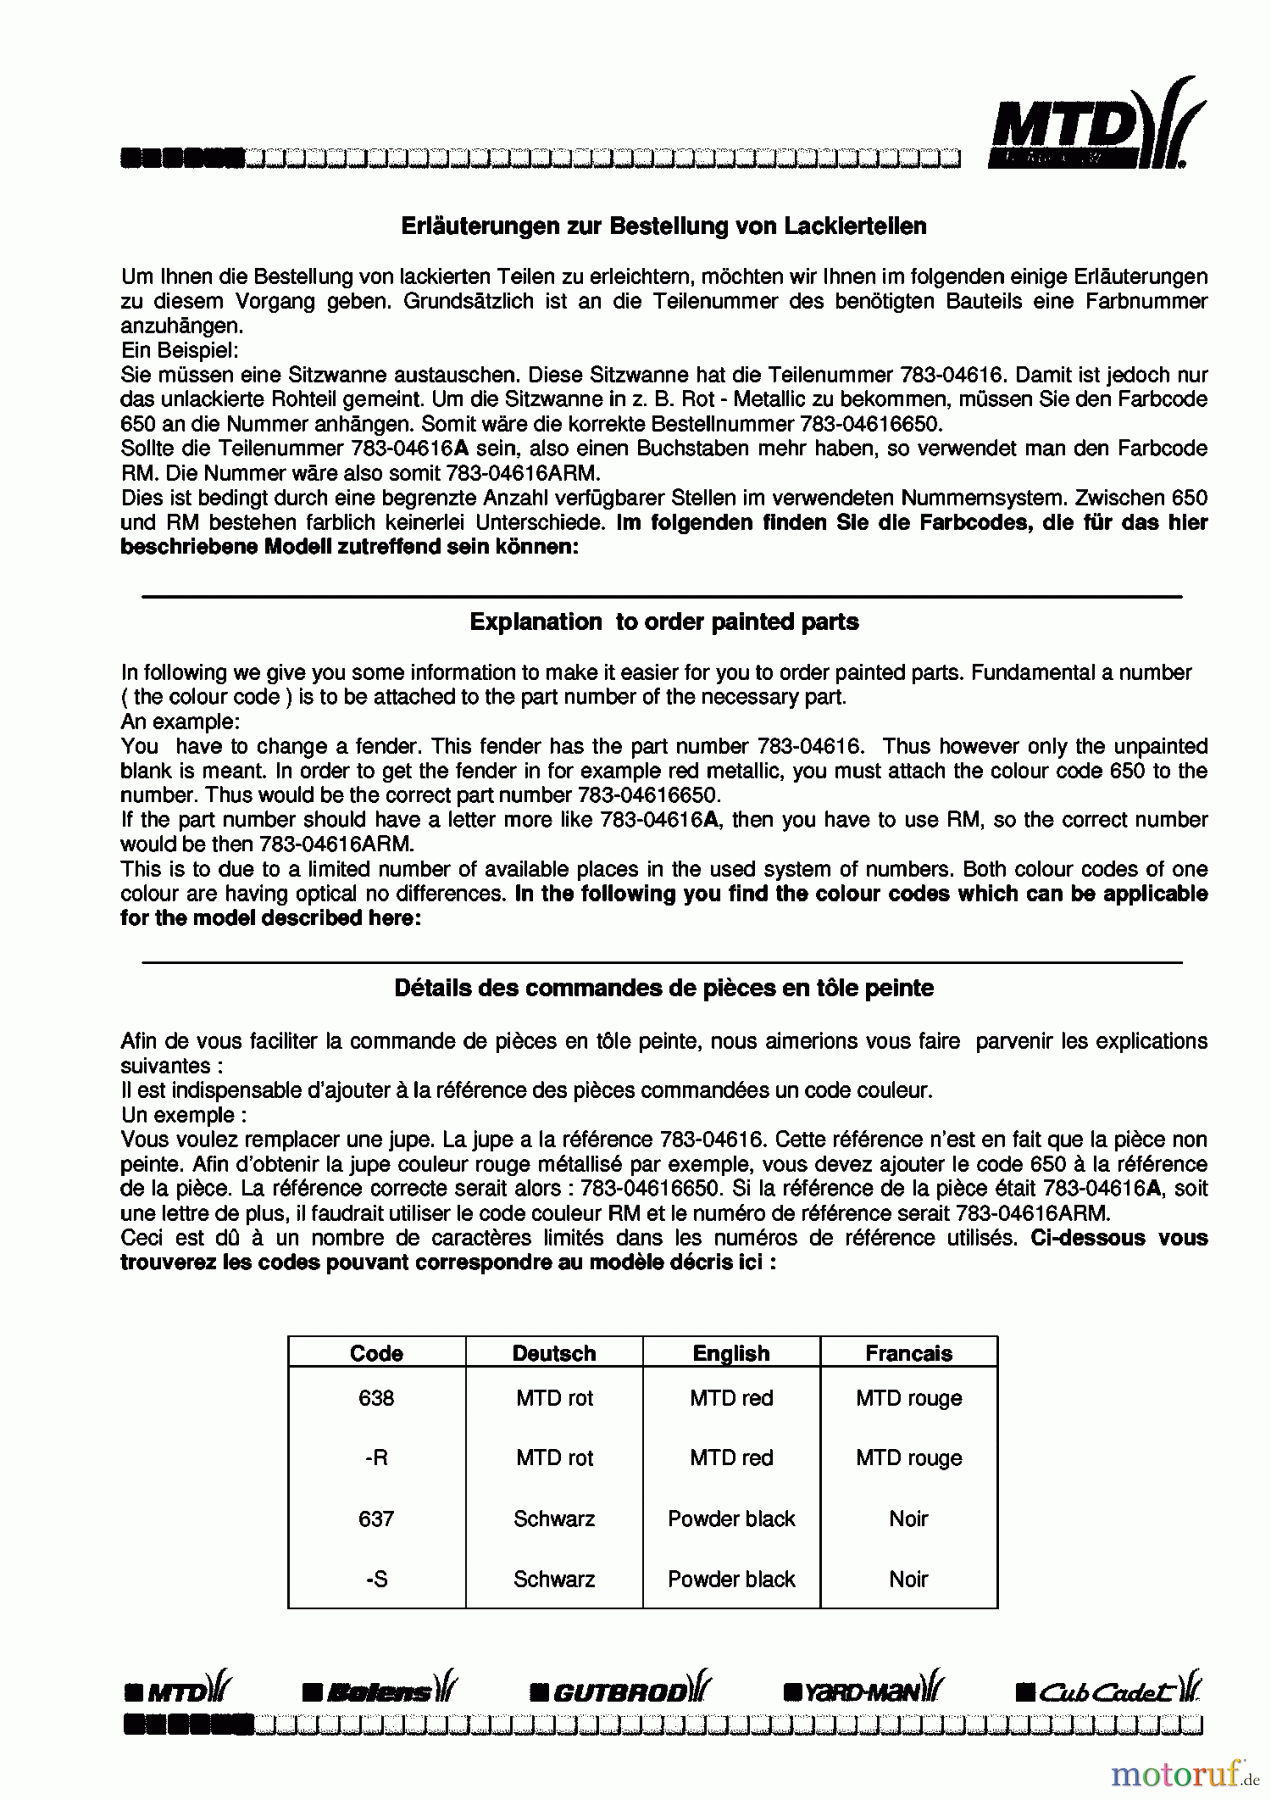  Univert Rasentraktoren UN 125 BF 13BL47GE663  (1998) Farbcode Information